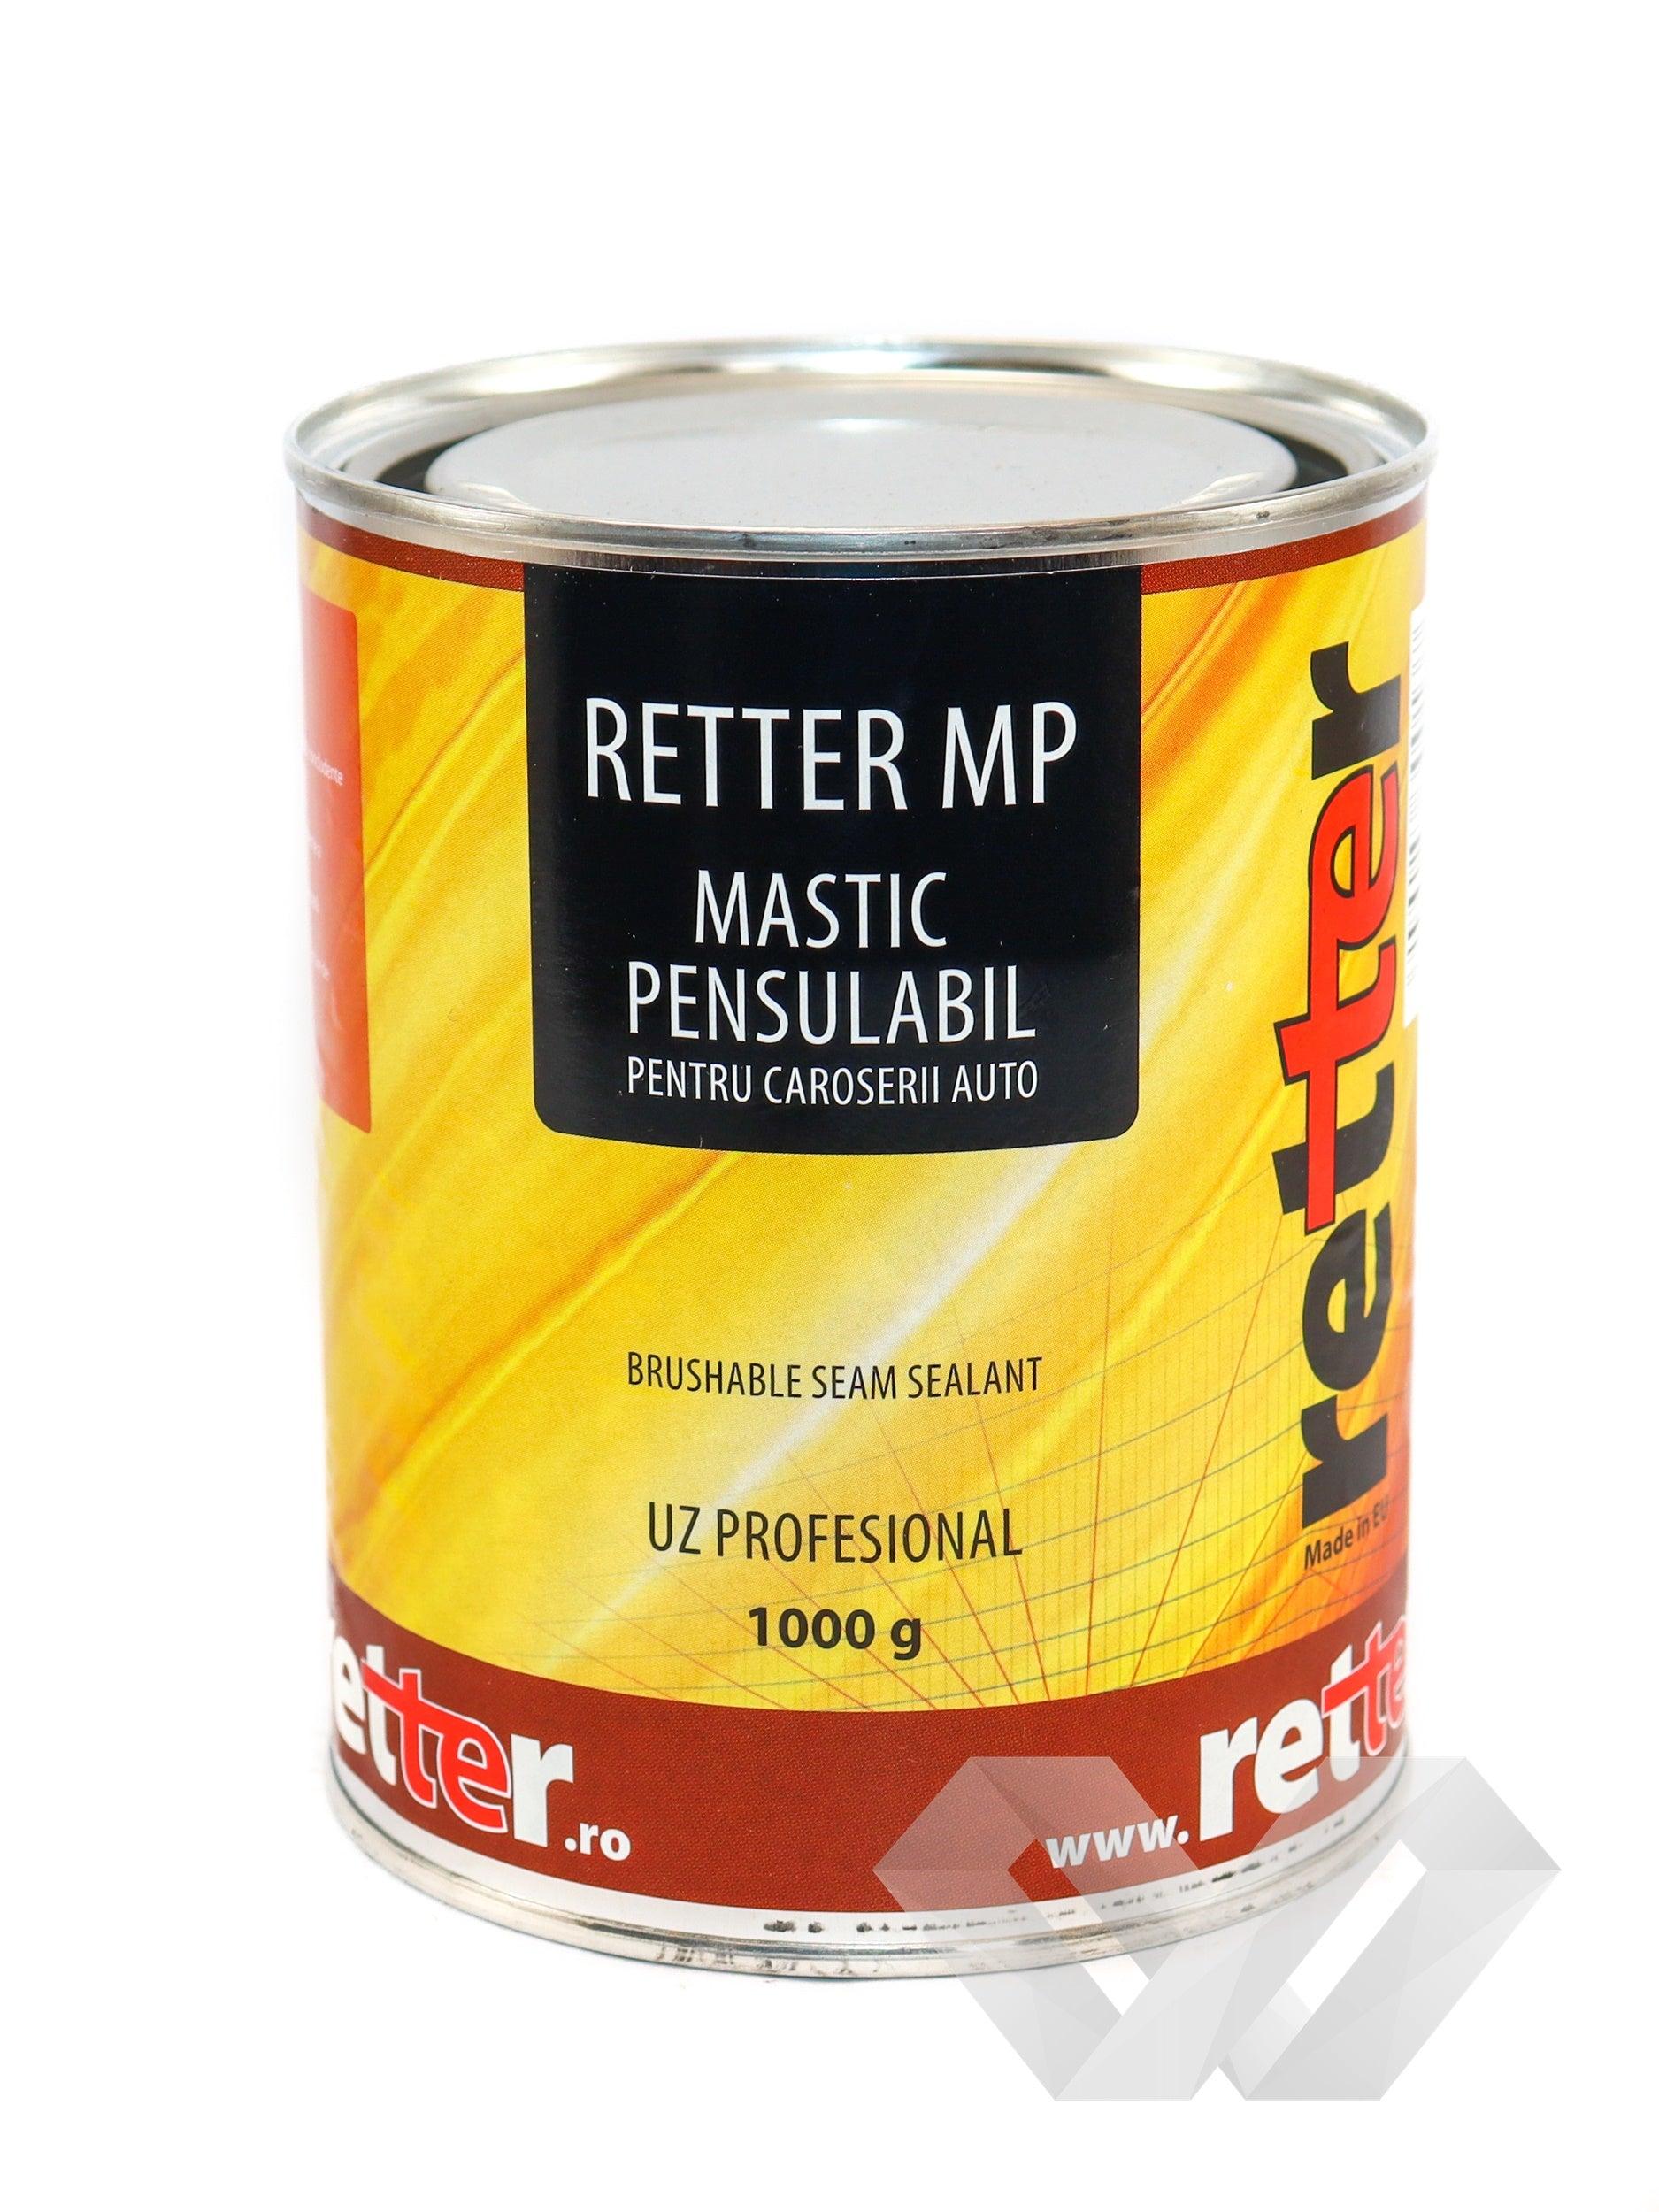 Mastic pensulabil pentru caroserii auto Retter MP, 1000gr